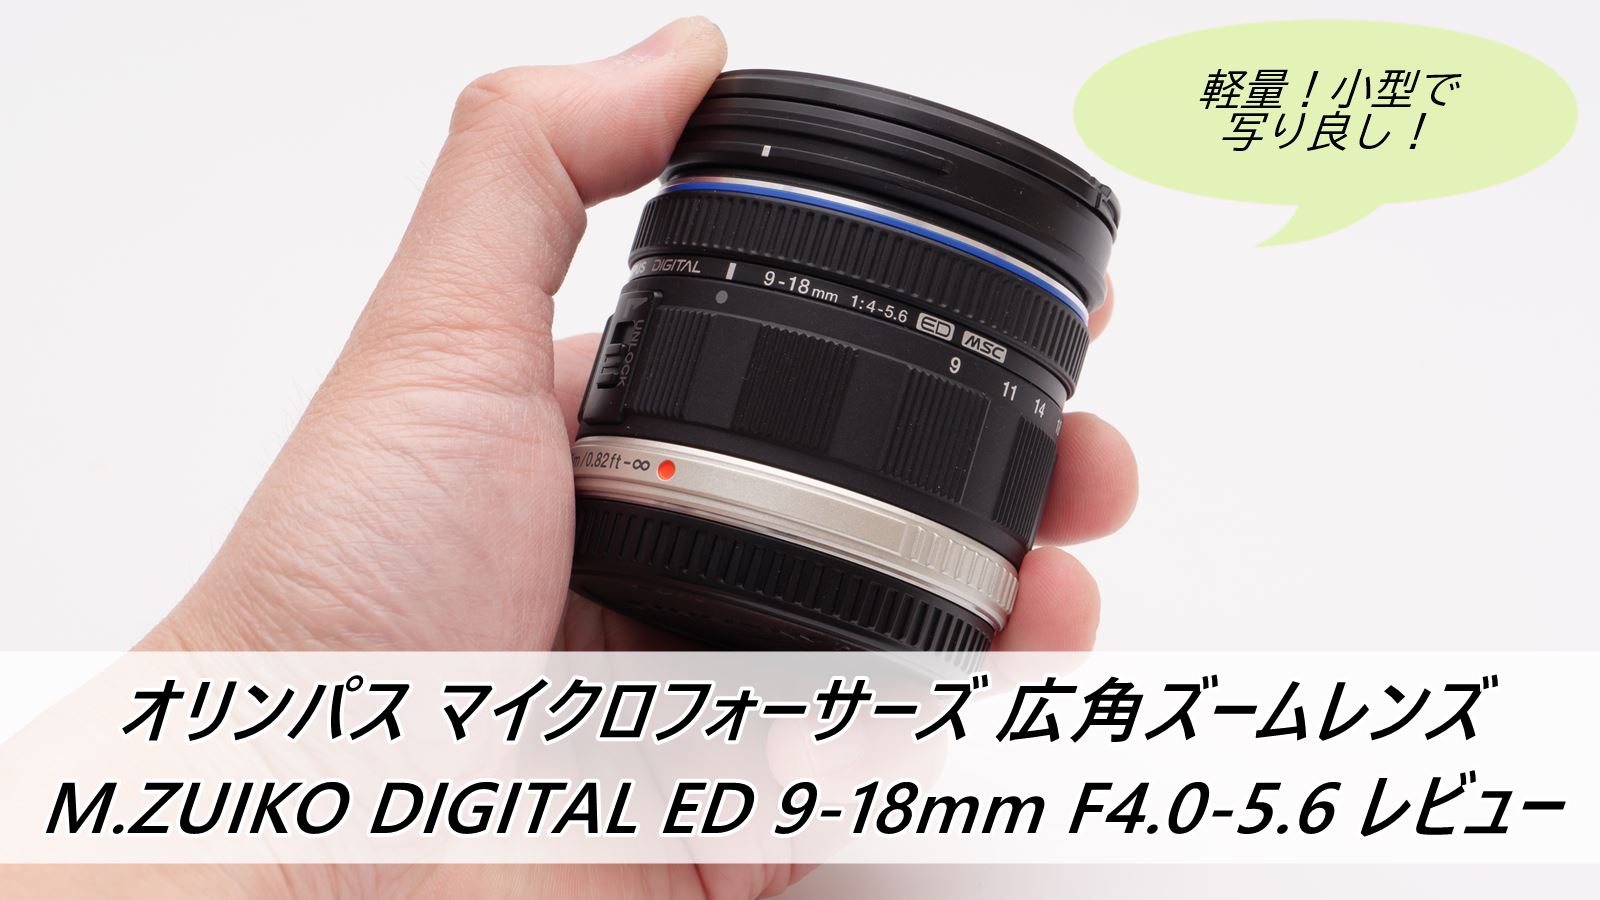 ランキング総合1位 OLYMPUS ZUIKO DIGITAL ED 9-18mm f4.0-5.6